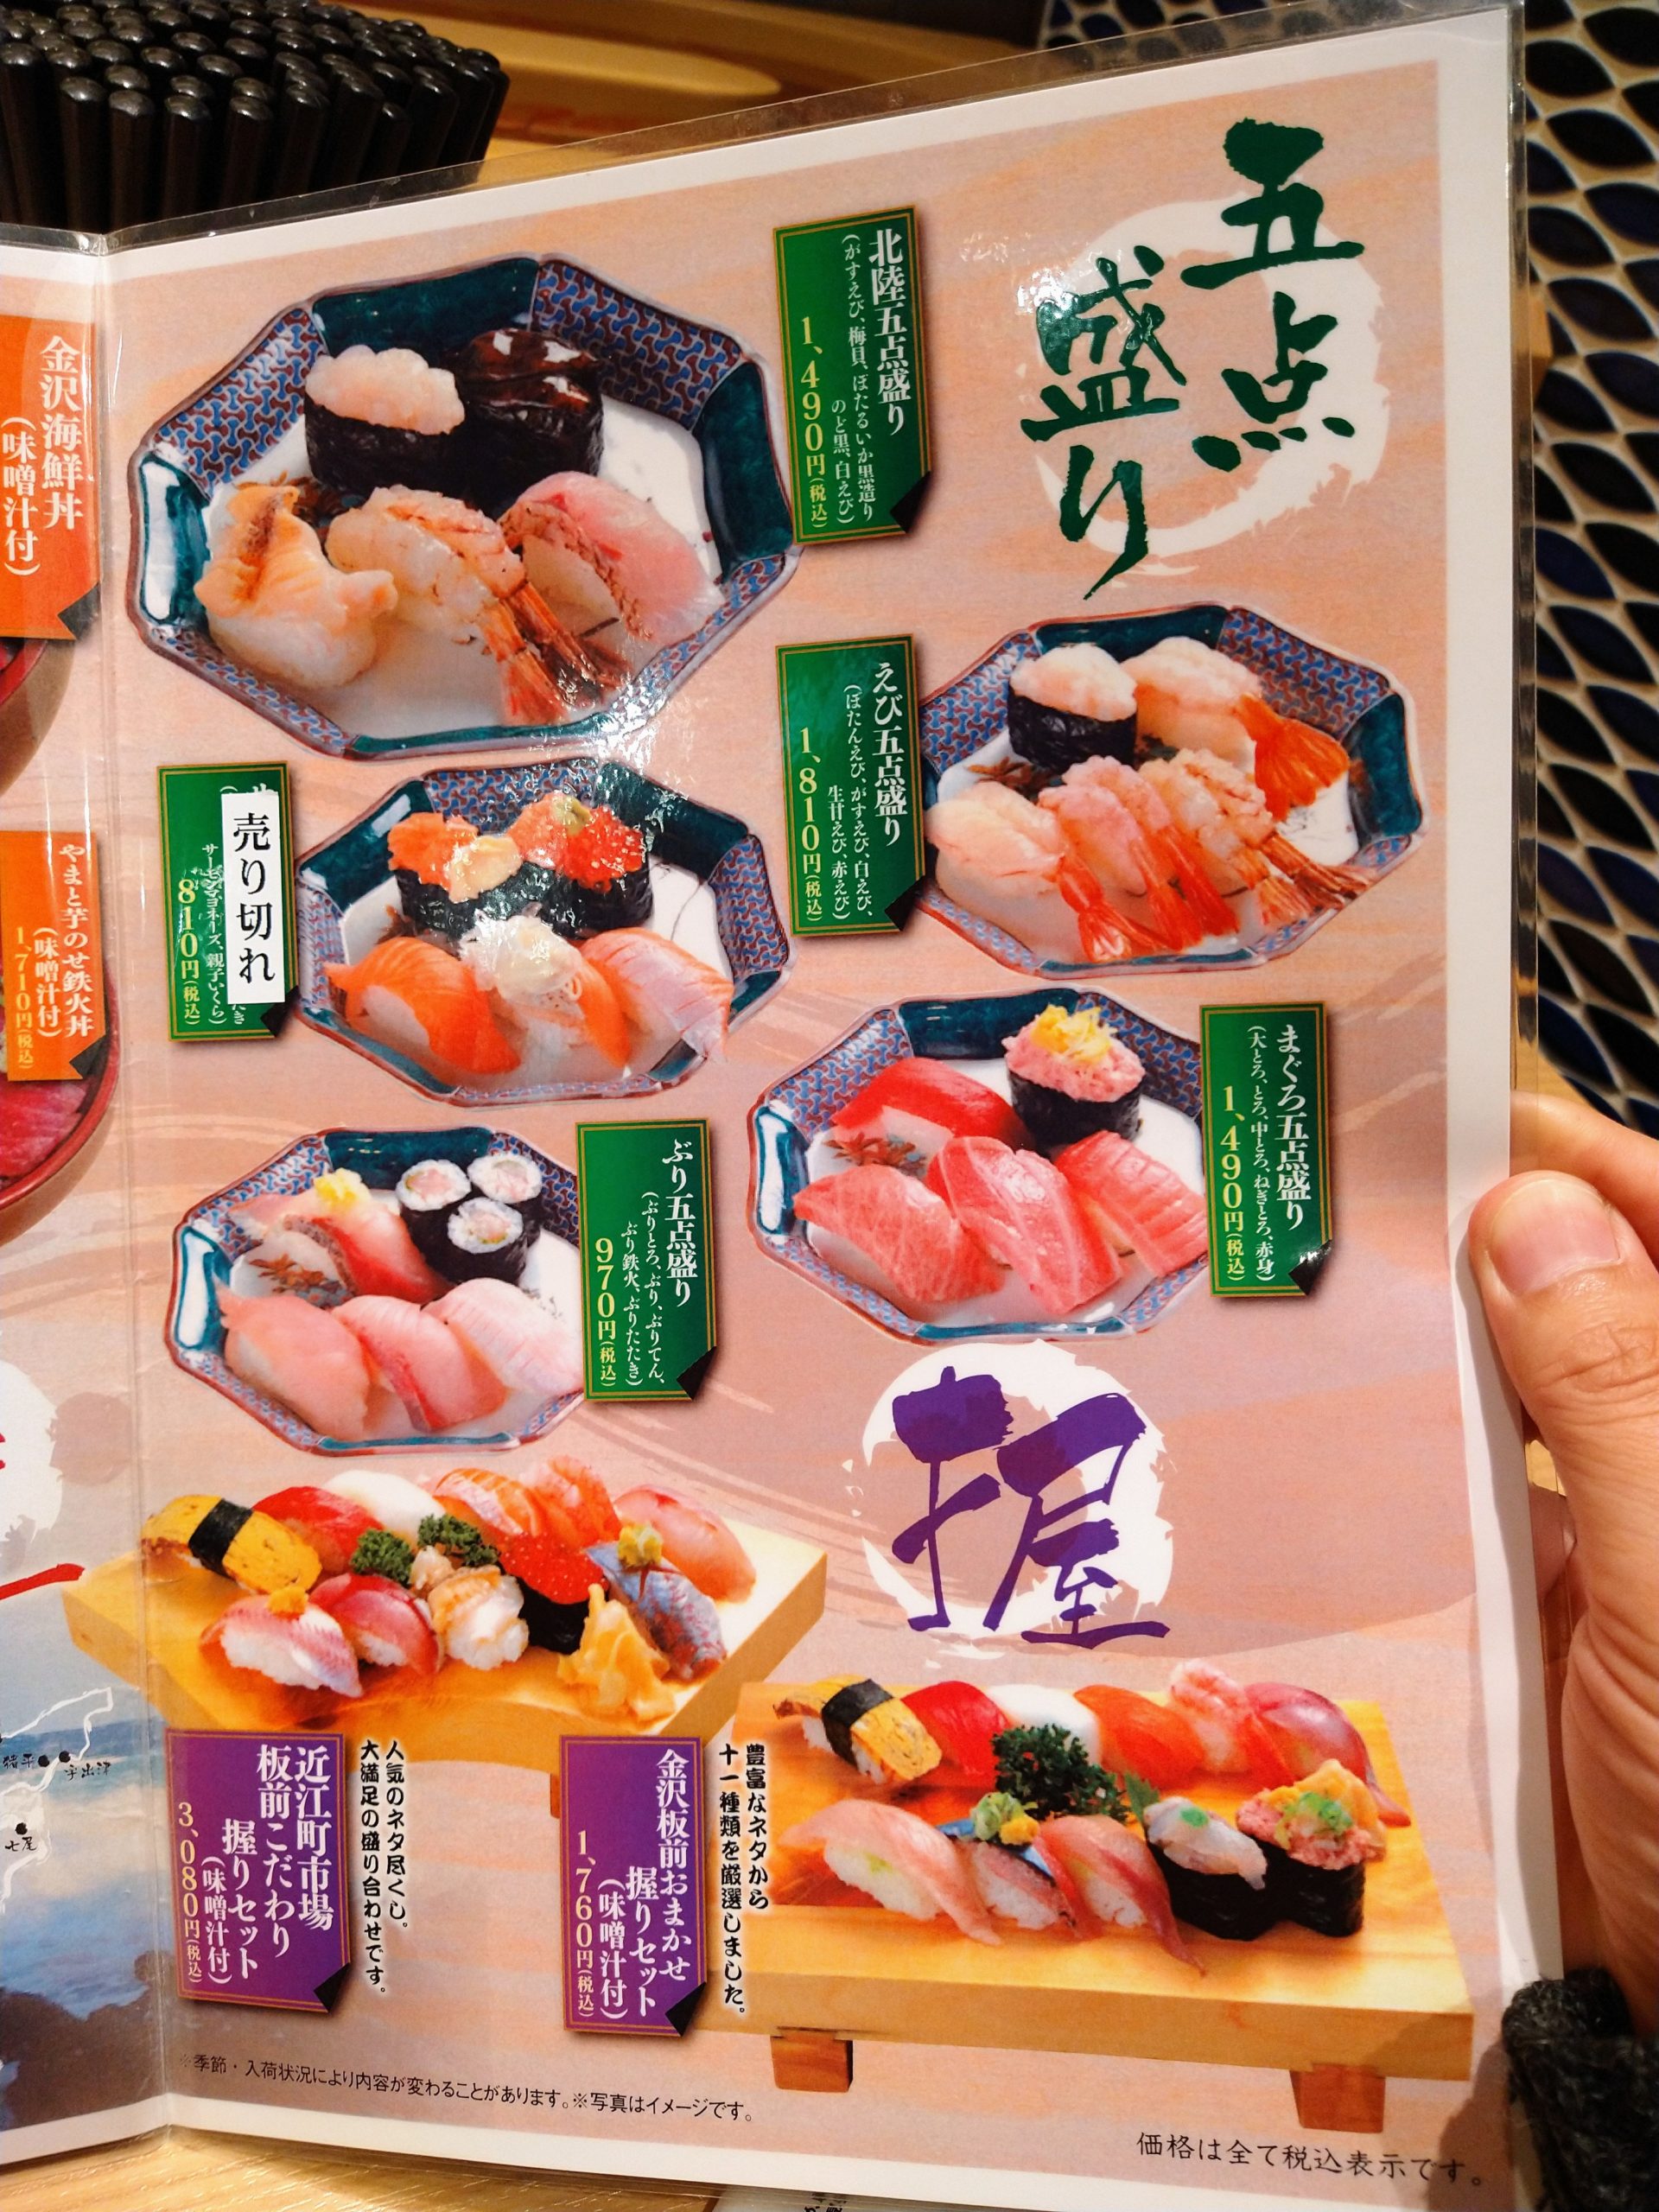 morimori-sushi-menu-35